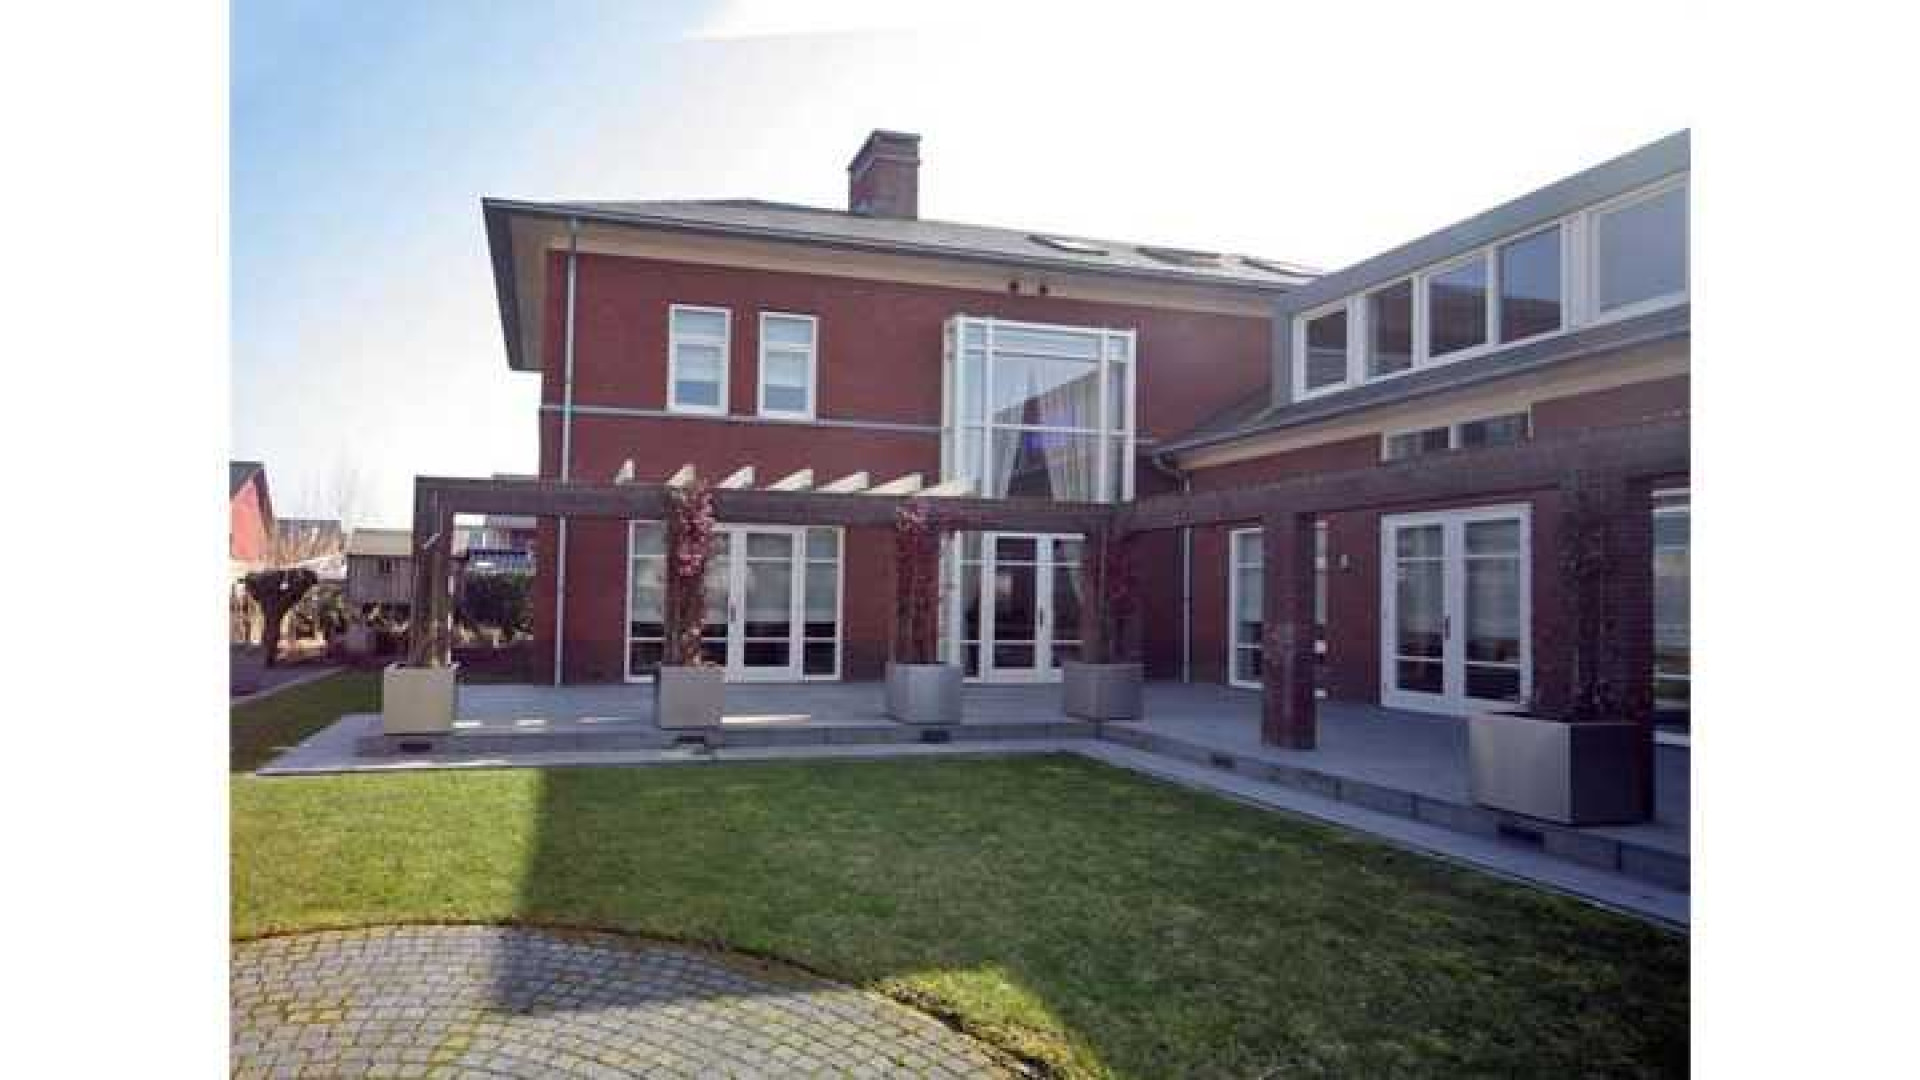 Yolanthe en Wesley Sneijder verhuist naar deze villa in Vleuten. Zie foto's